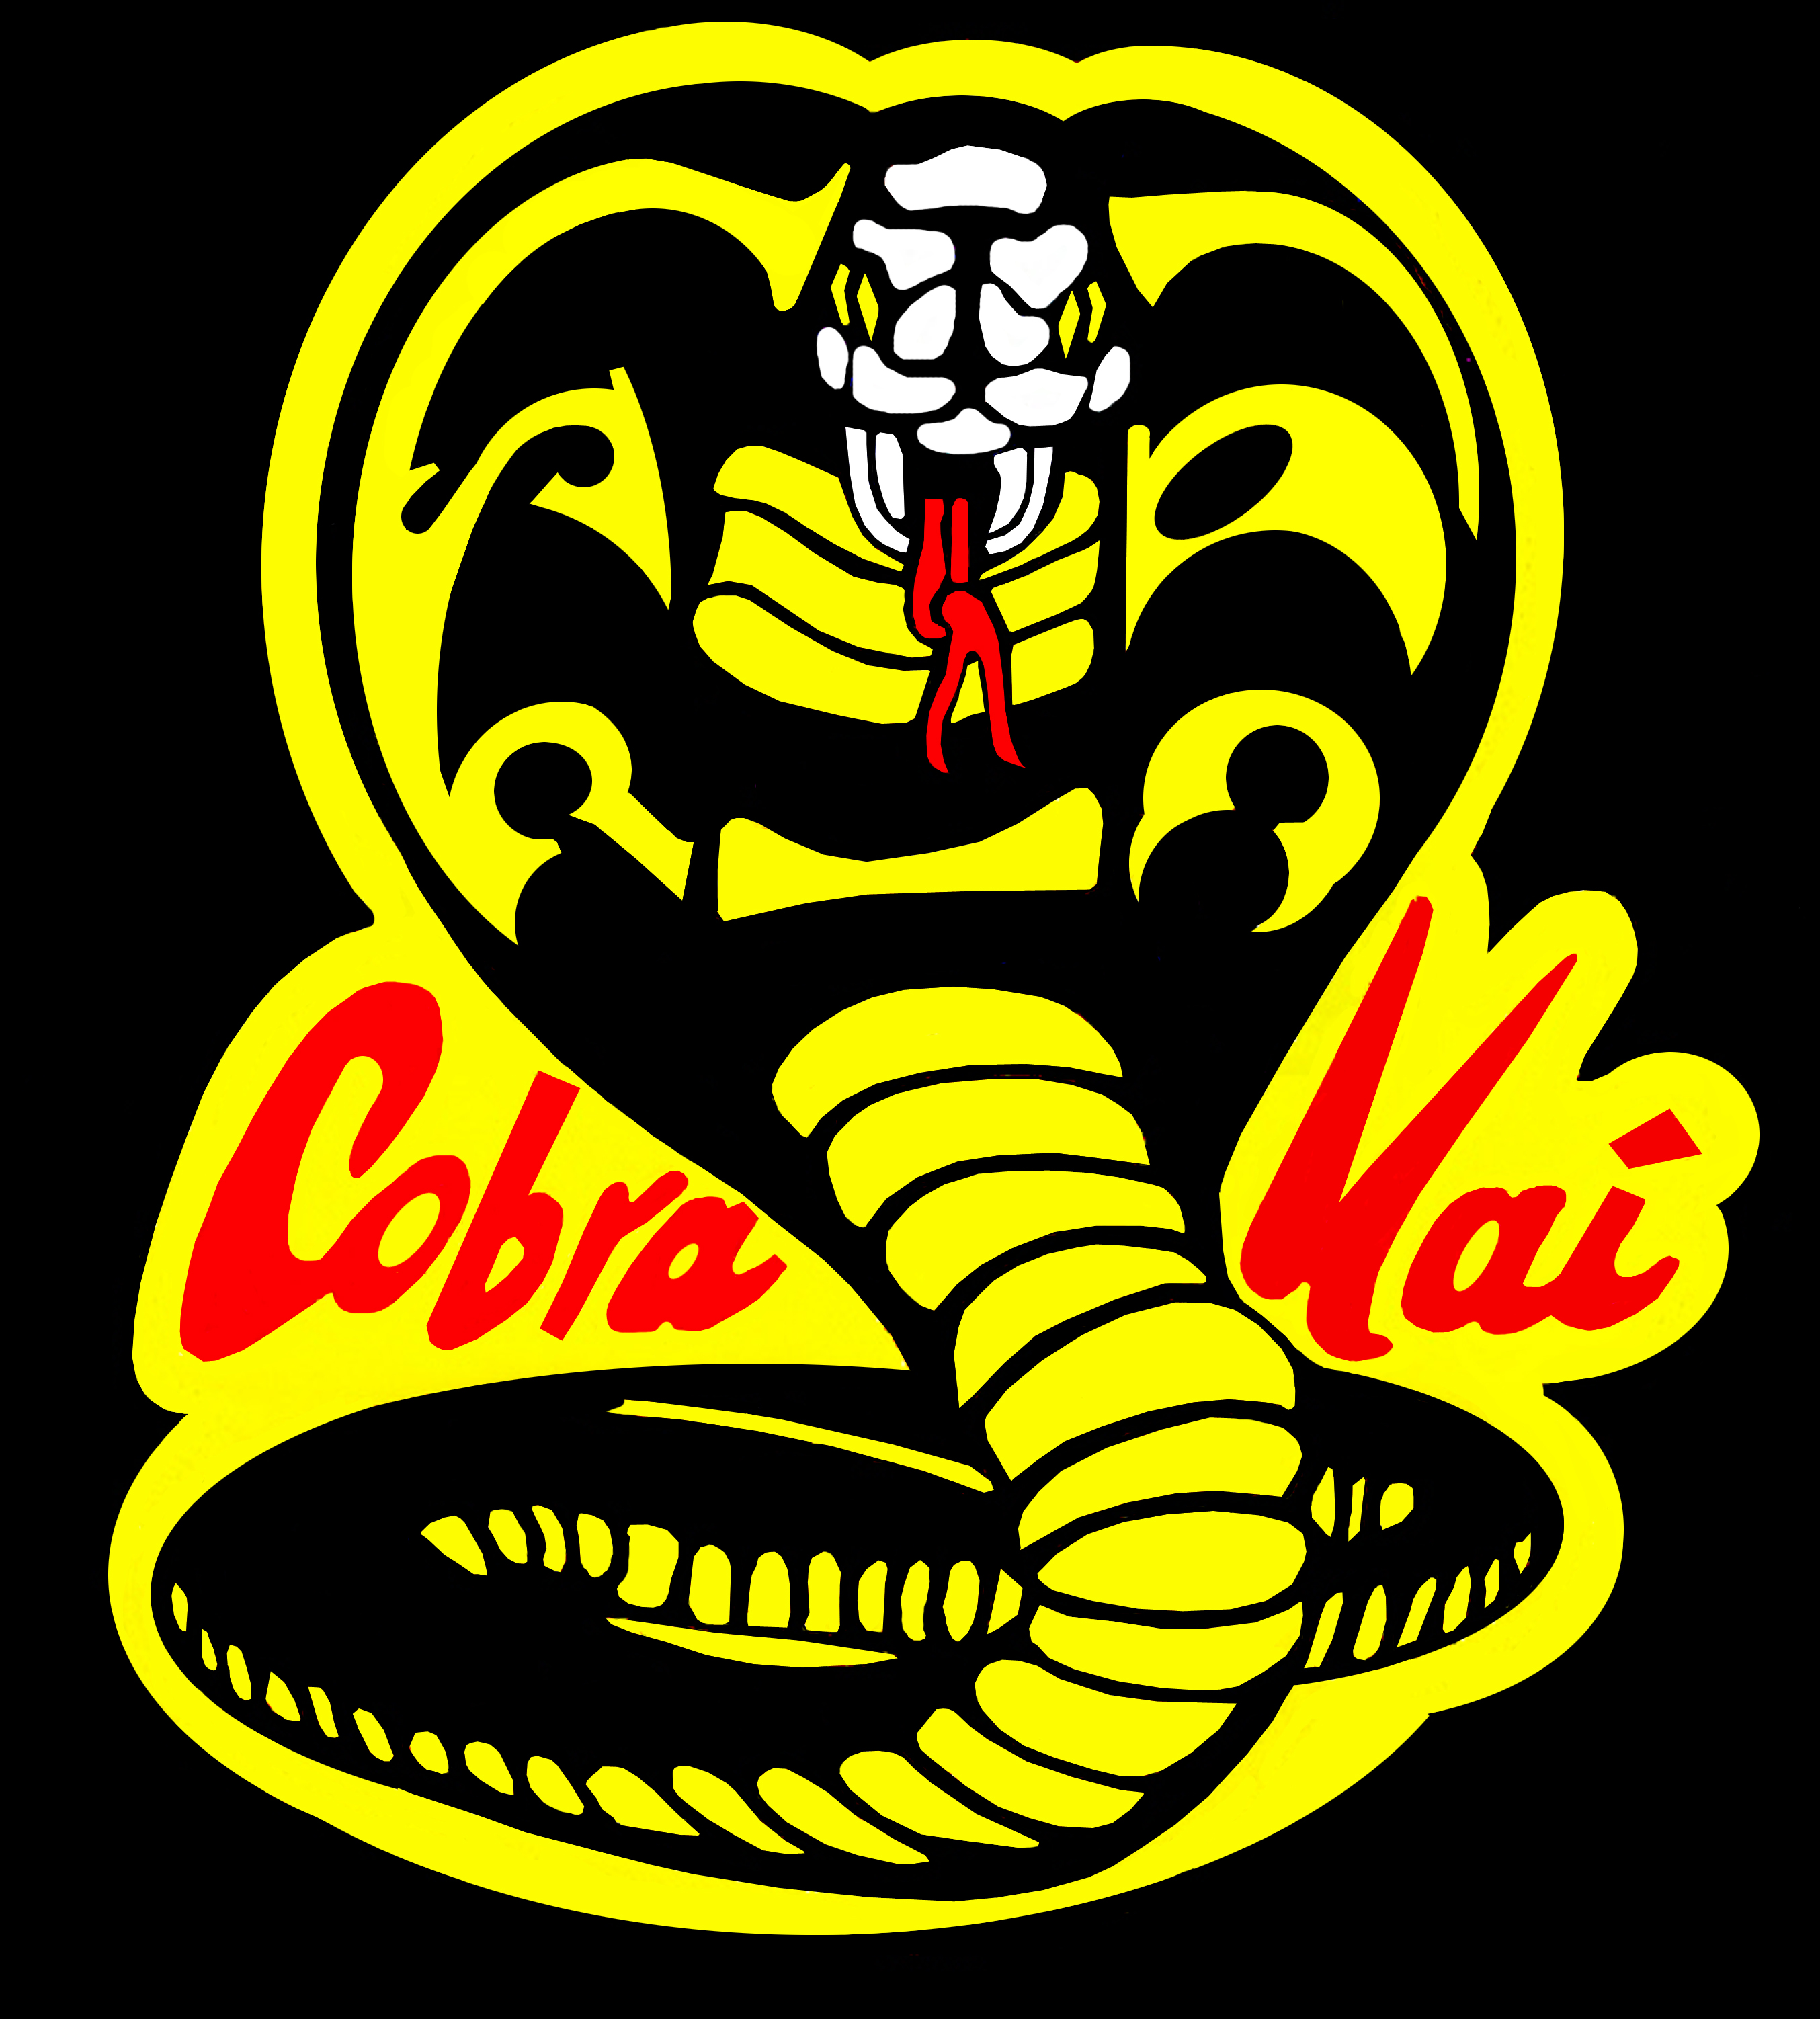 Karate Kid Cobra Kai drawing free image